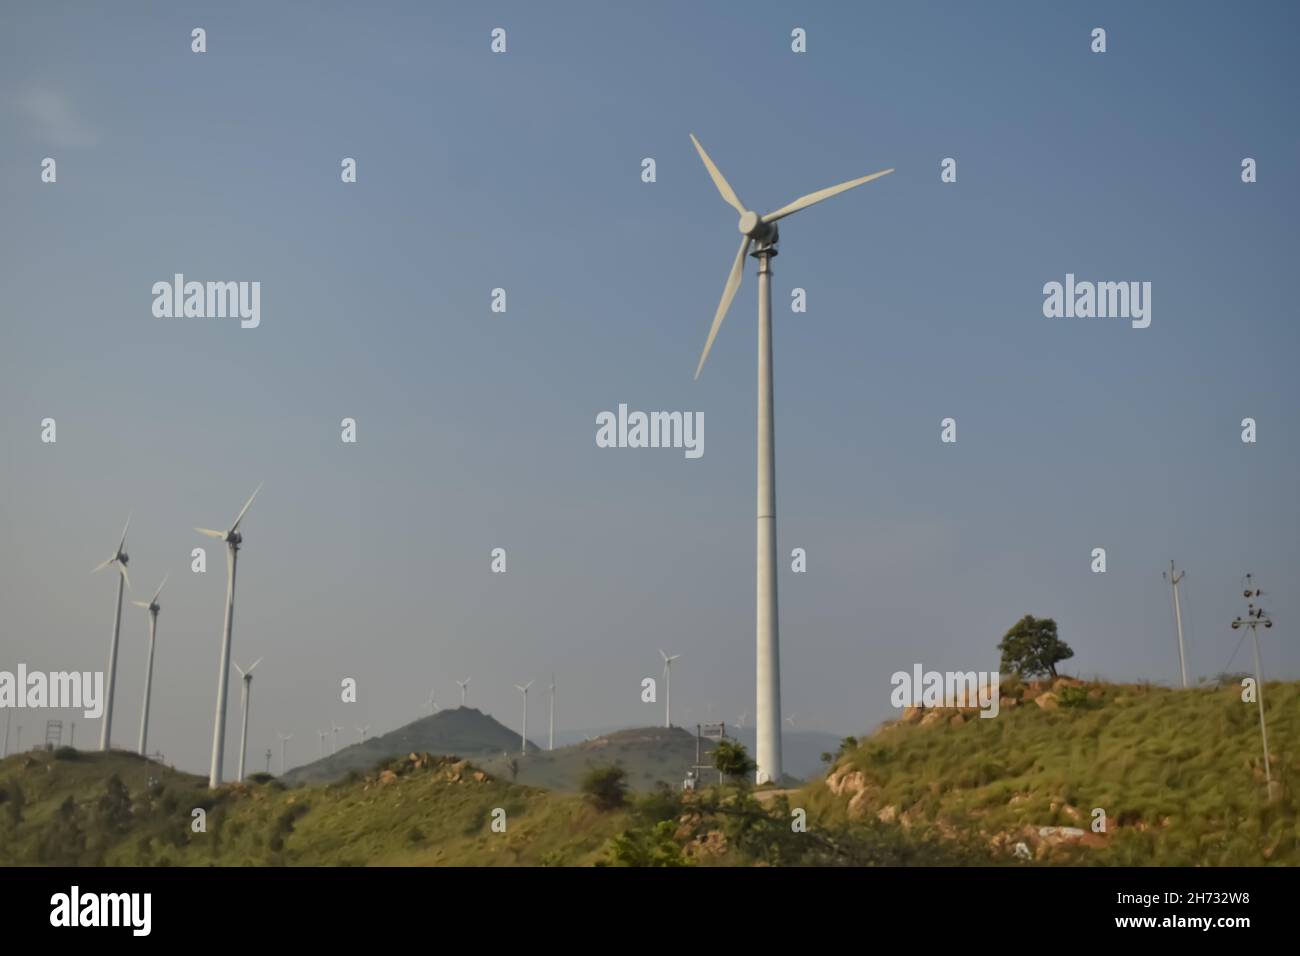 Foto de enfoque selectivo de múltiples molinos de viento que son fuente de energía renovable que funcionan en la parte superior Foto de stock